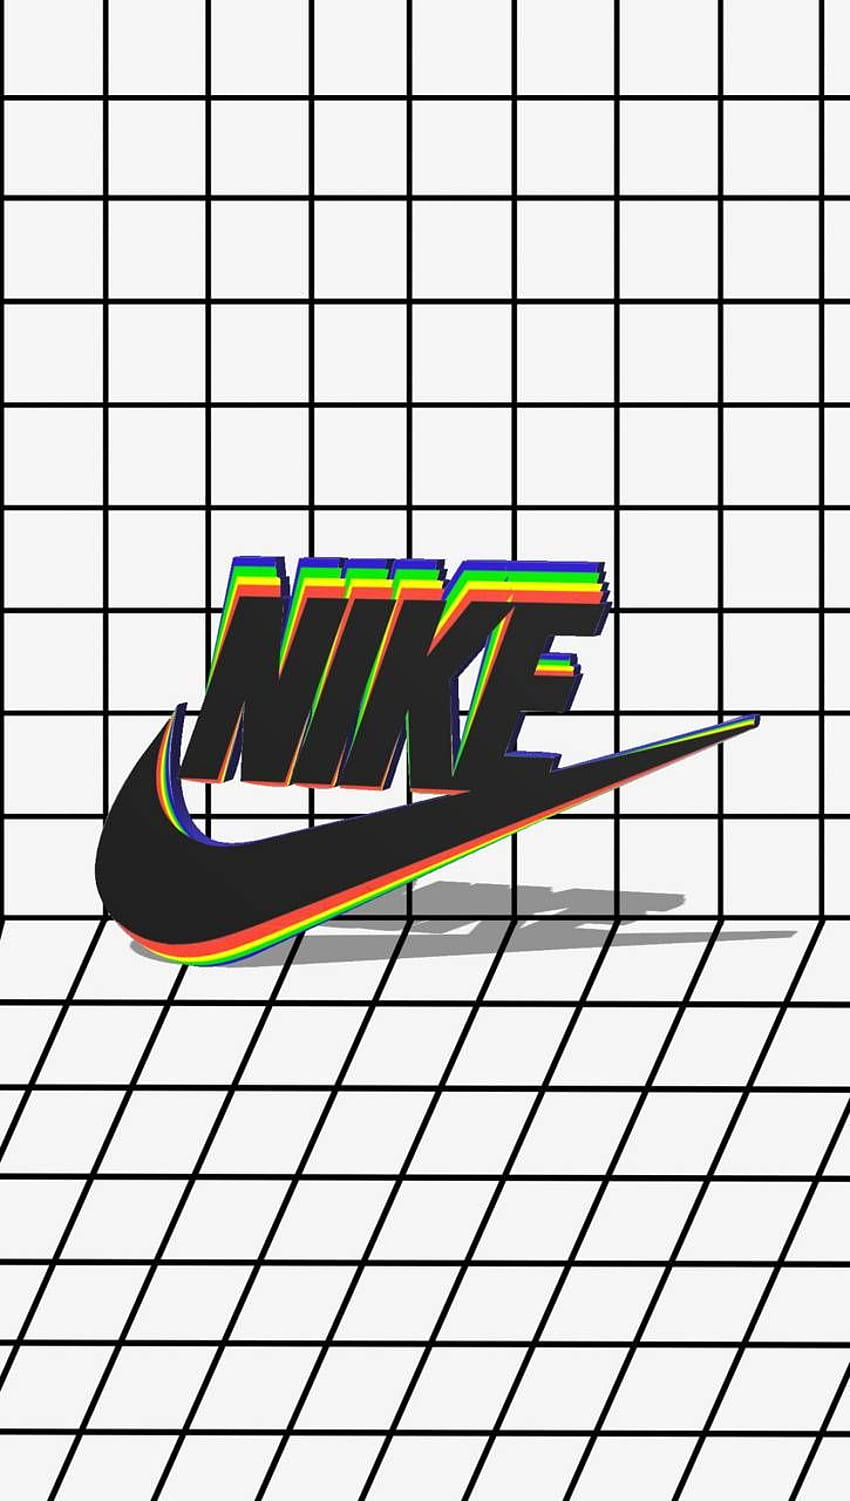 Retro Nike Logo Wallpaper: Sự hòa quyện giữa phong cách retro và thương hiệu Nike đã tạo nên những bức ảnh không thể đẹp hơn với các họa tiết và màu sắc cực kỳ sáng tạo. Hãy ngắm nhìn những Retro Nike Logo Wallpaper này và choáng ngợp với sự tinh tế của chúng.